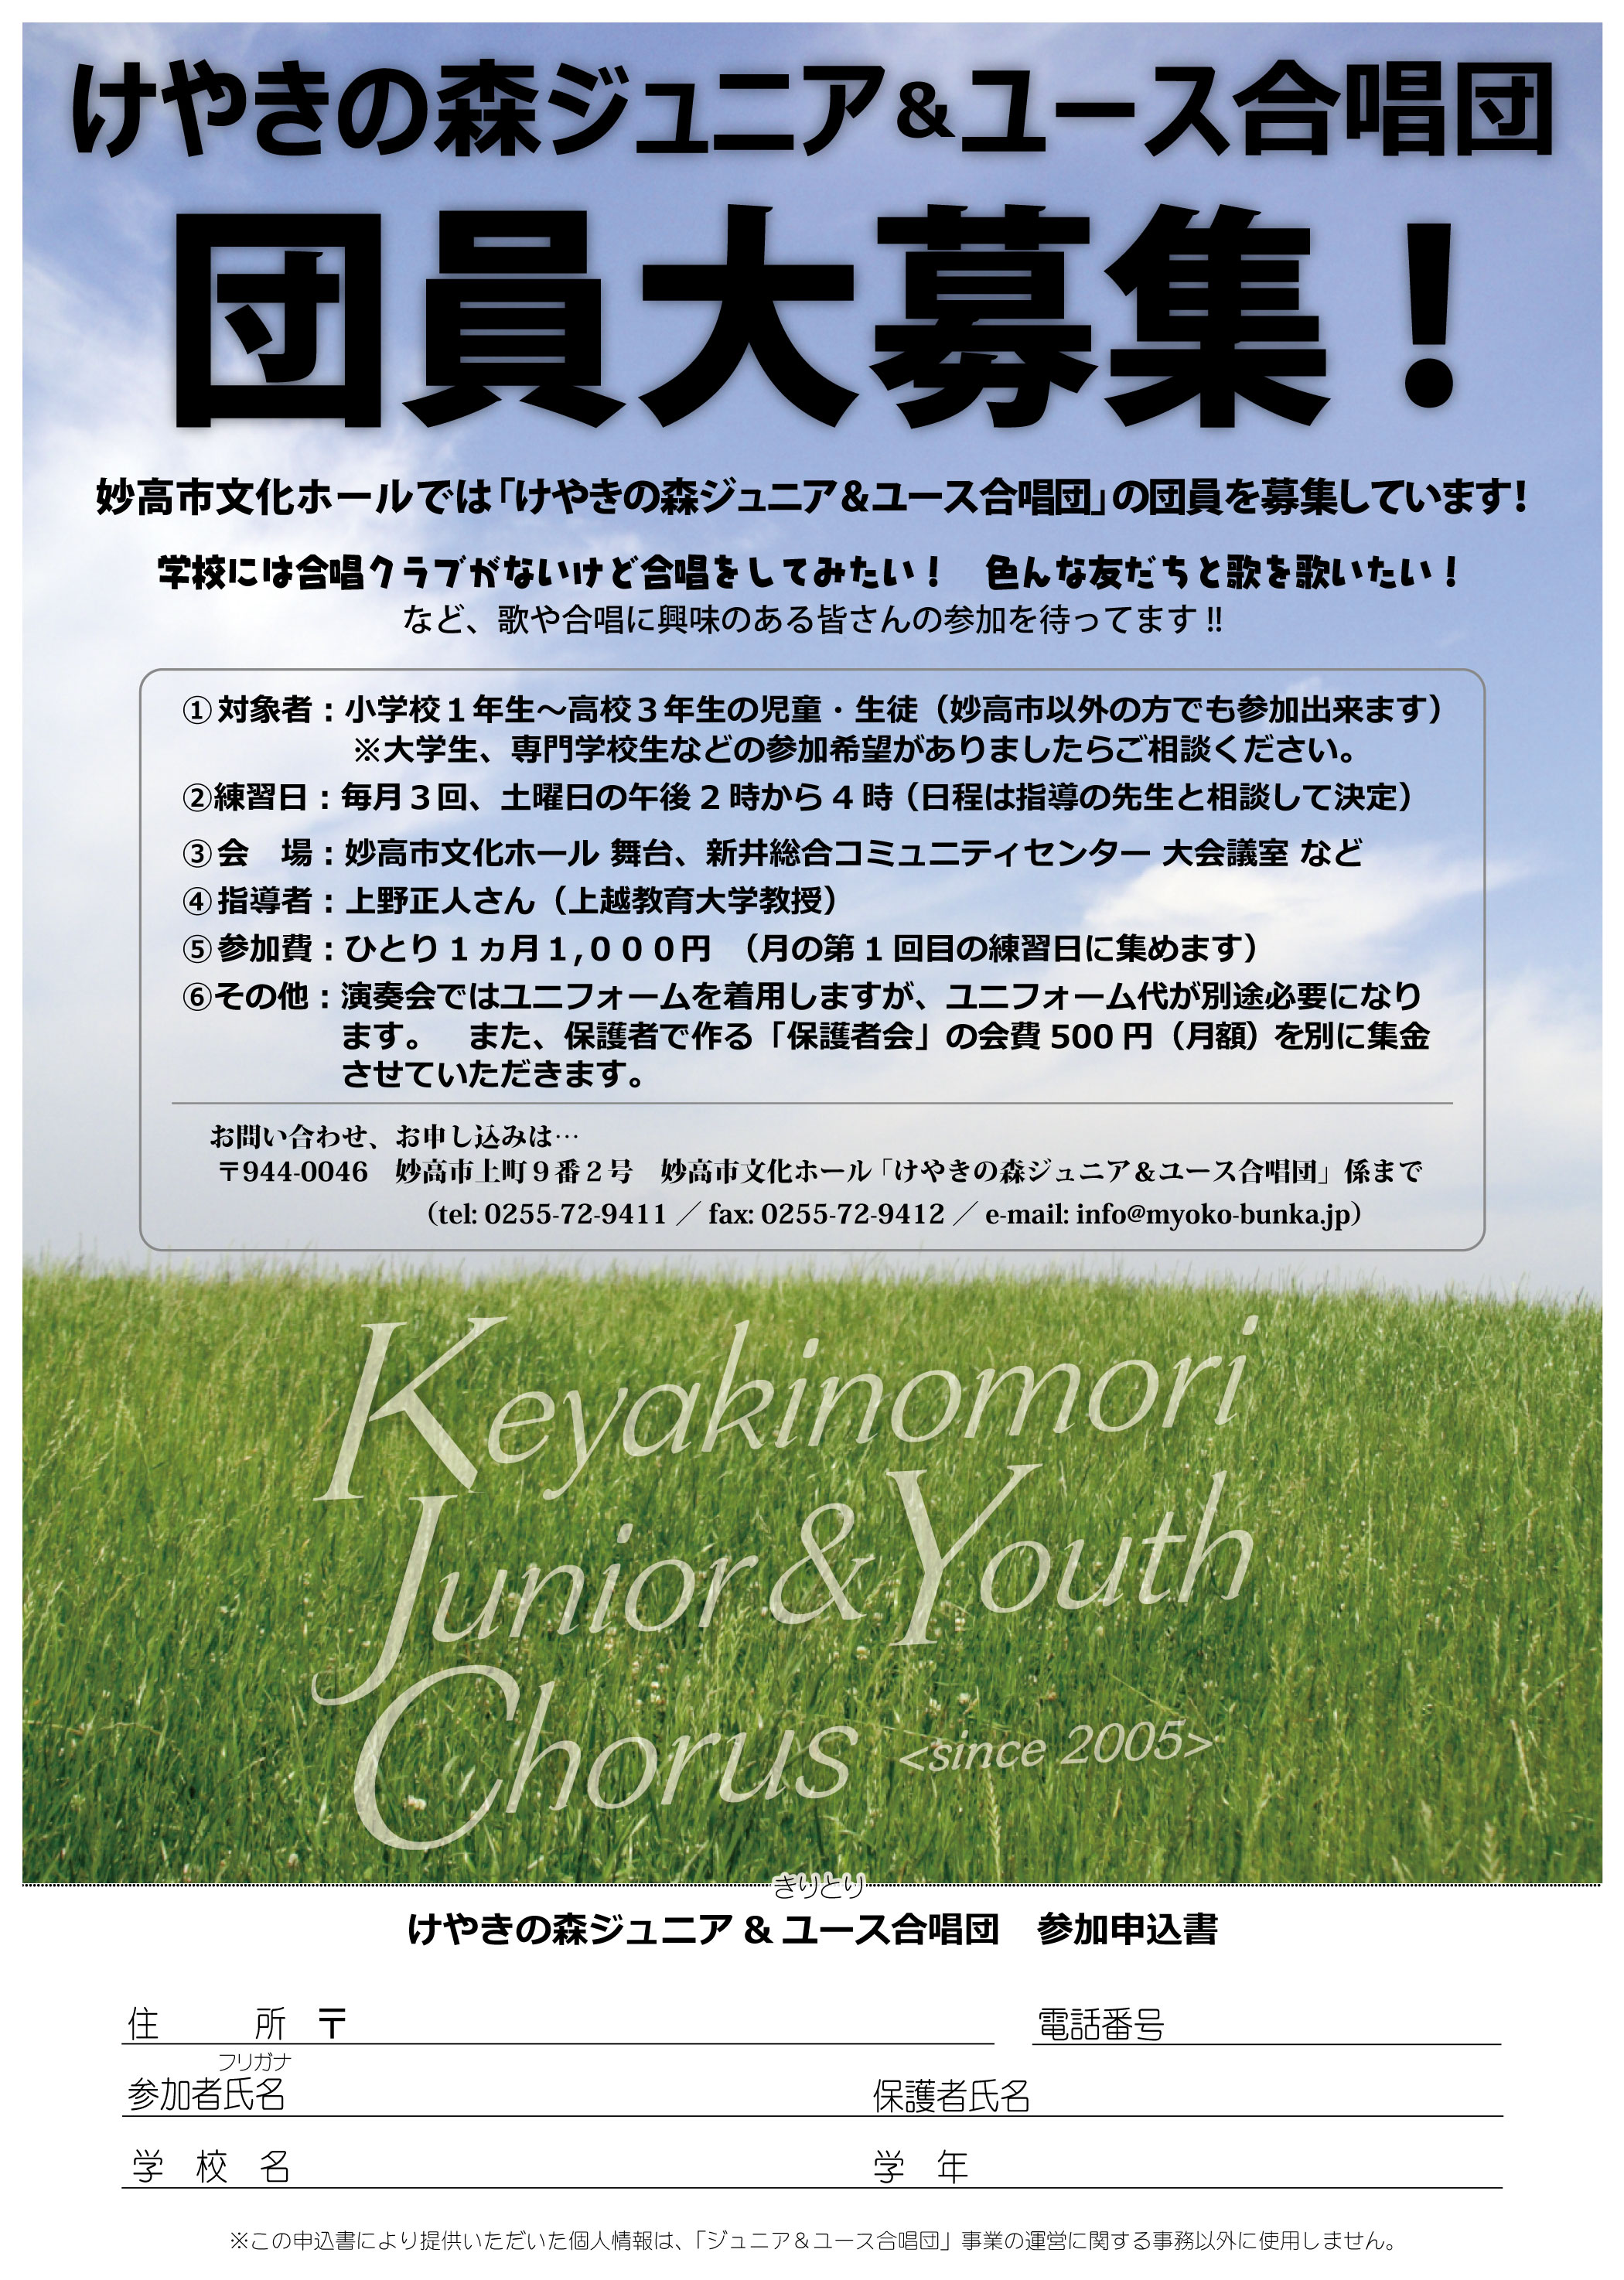 http://myoko-bunka.jp/news/KJYC_boshu2013.jpg